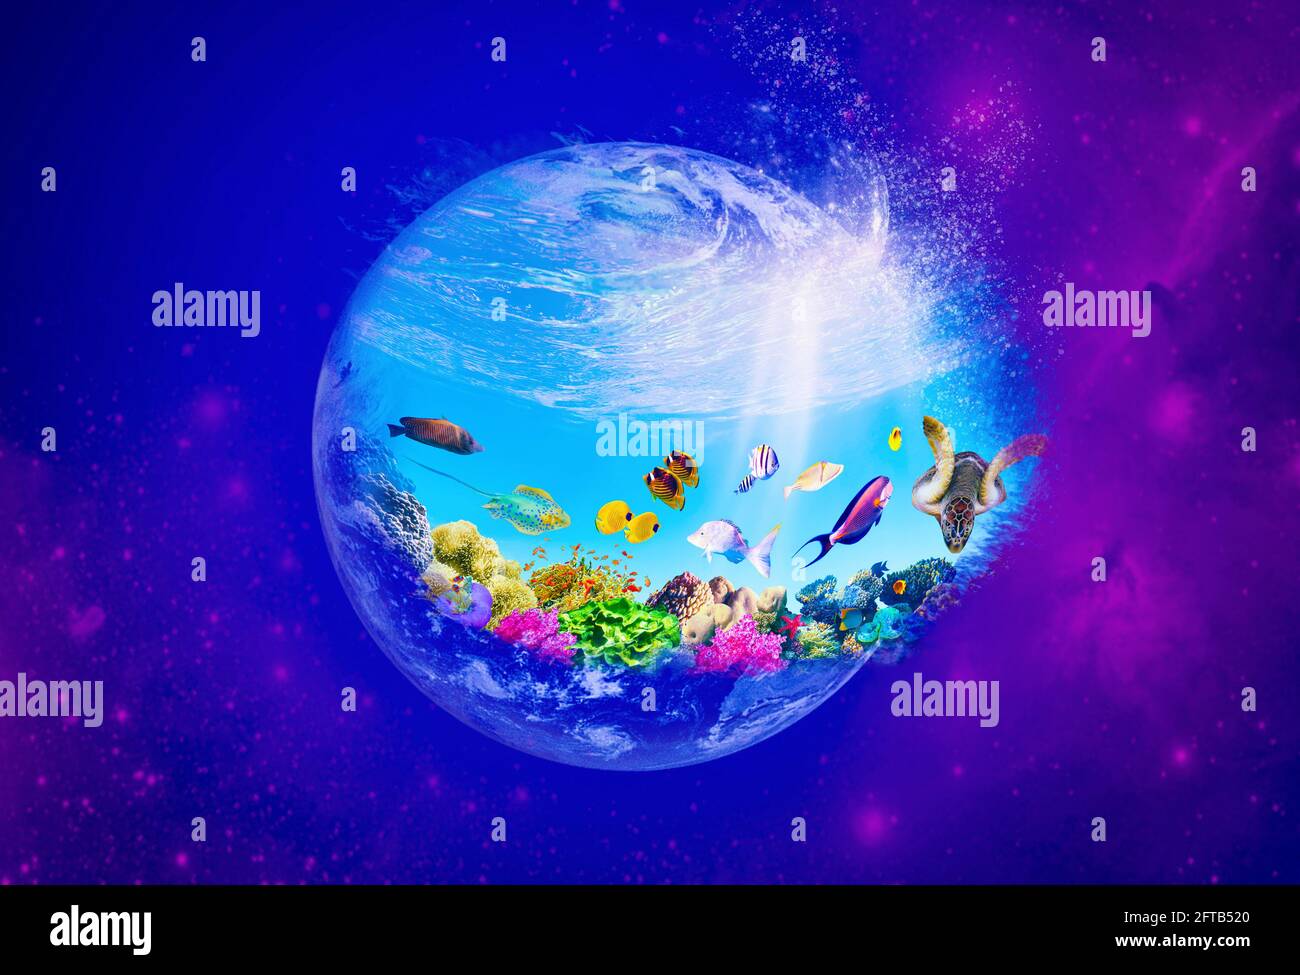 Image conceptuelle de l'océan mondial comme planète ou globe dans l'espace. Concept de protection de l'environnement. Monde sous-marin. Récif de corail et poissons de la mer Rouge Banque D'Images